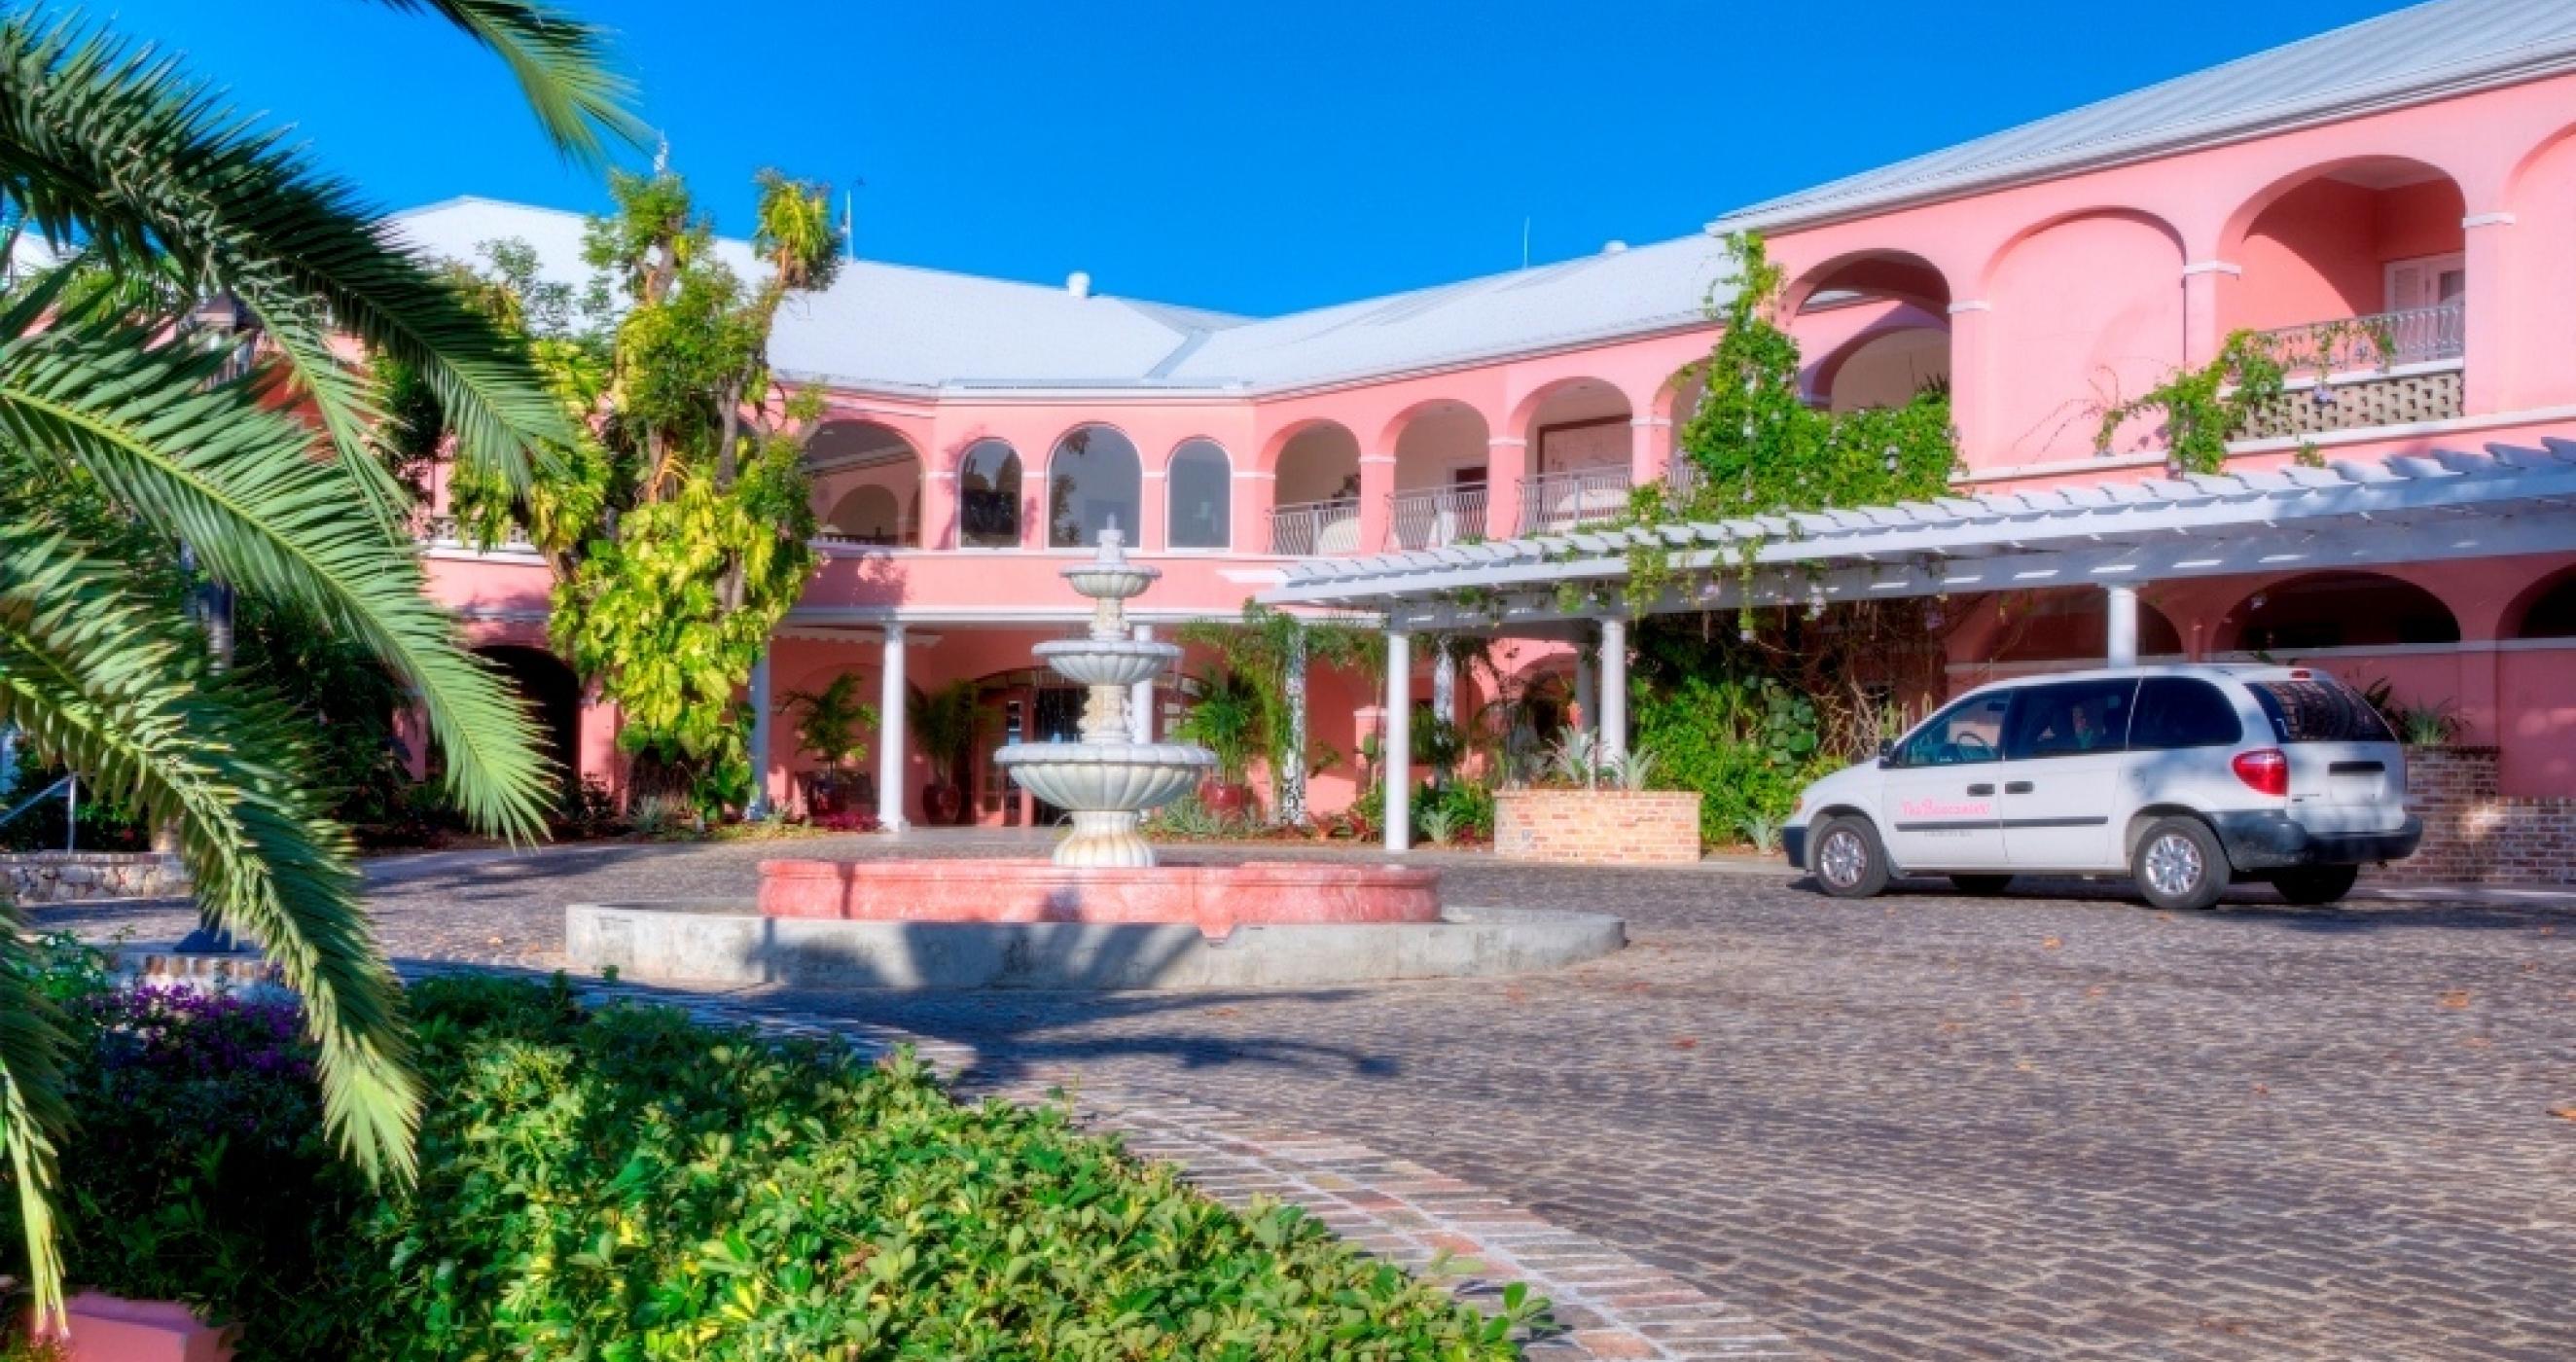 The Buccaneer Hotel, St. Croix, US Virgin Islands